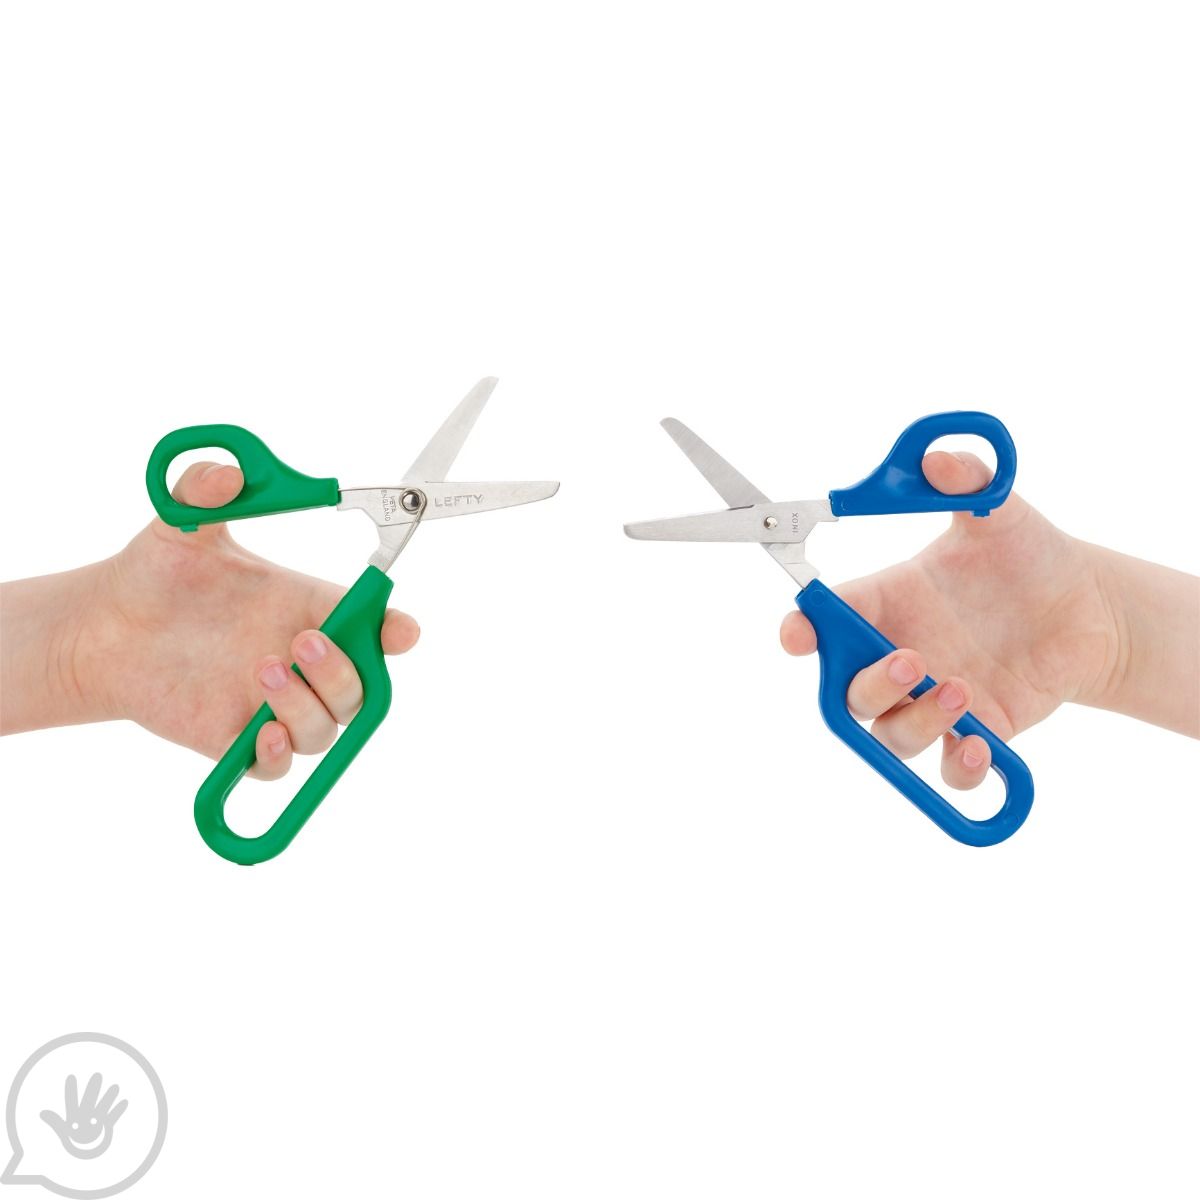 Easi-Grip Long Loop Self-Opening Scissors